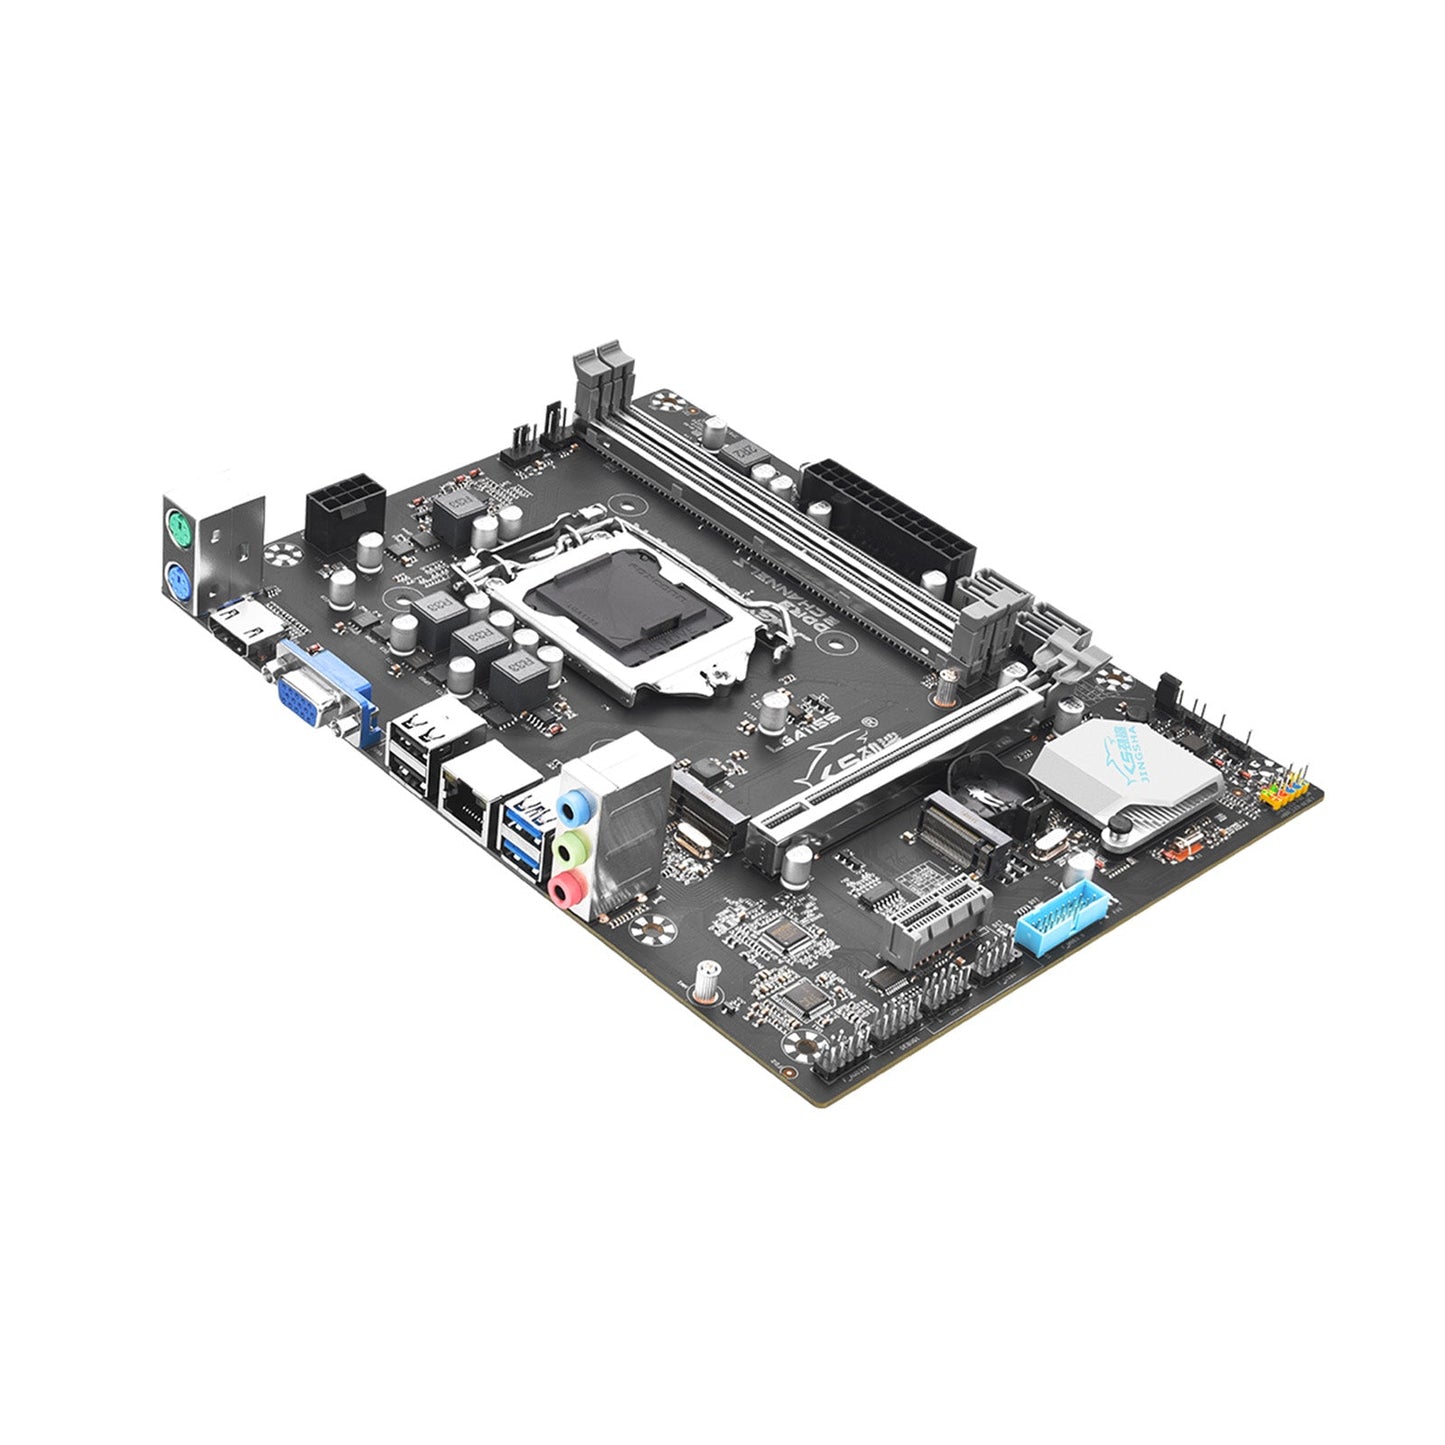 B75M-K Motherboard Desktop Gigabit Network Card DDR3 Memory LGA-1155 CPU M.2